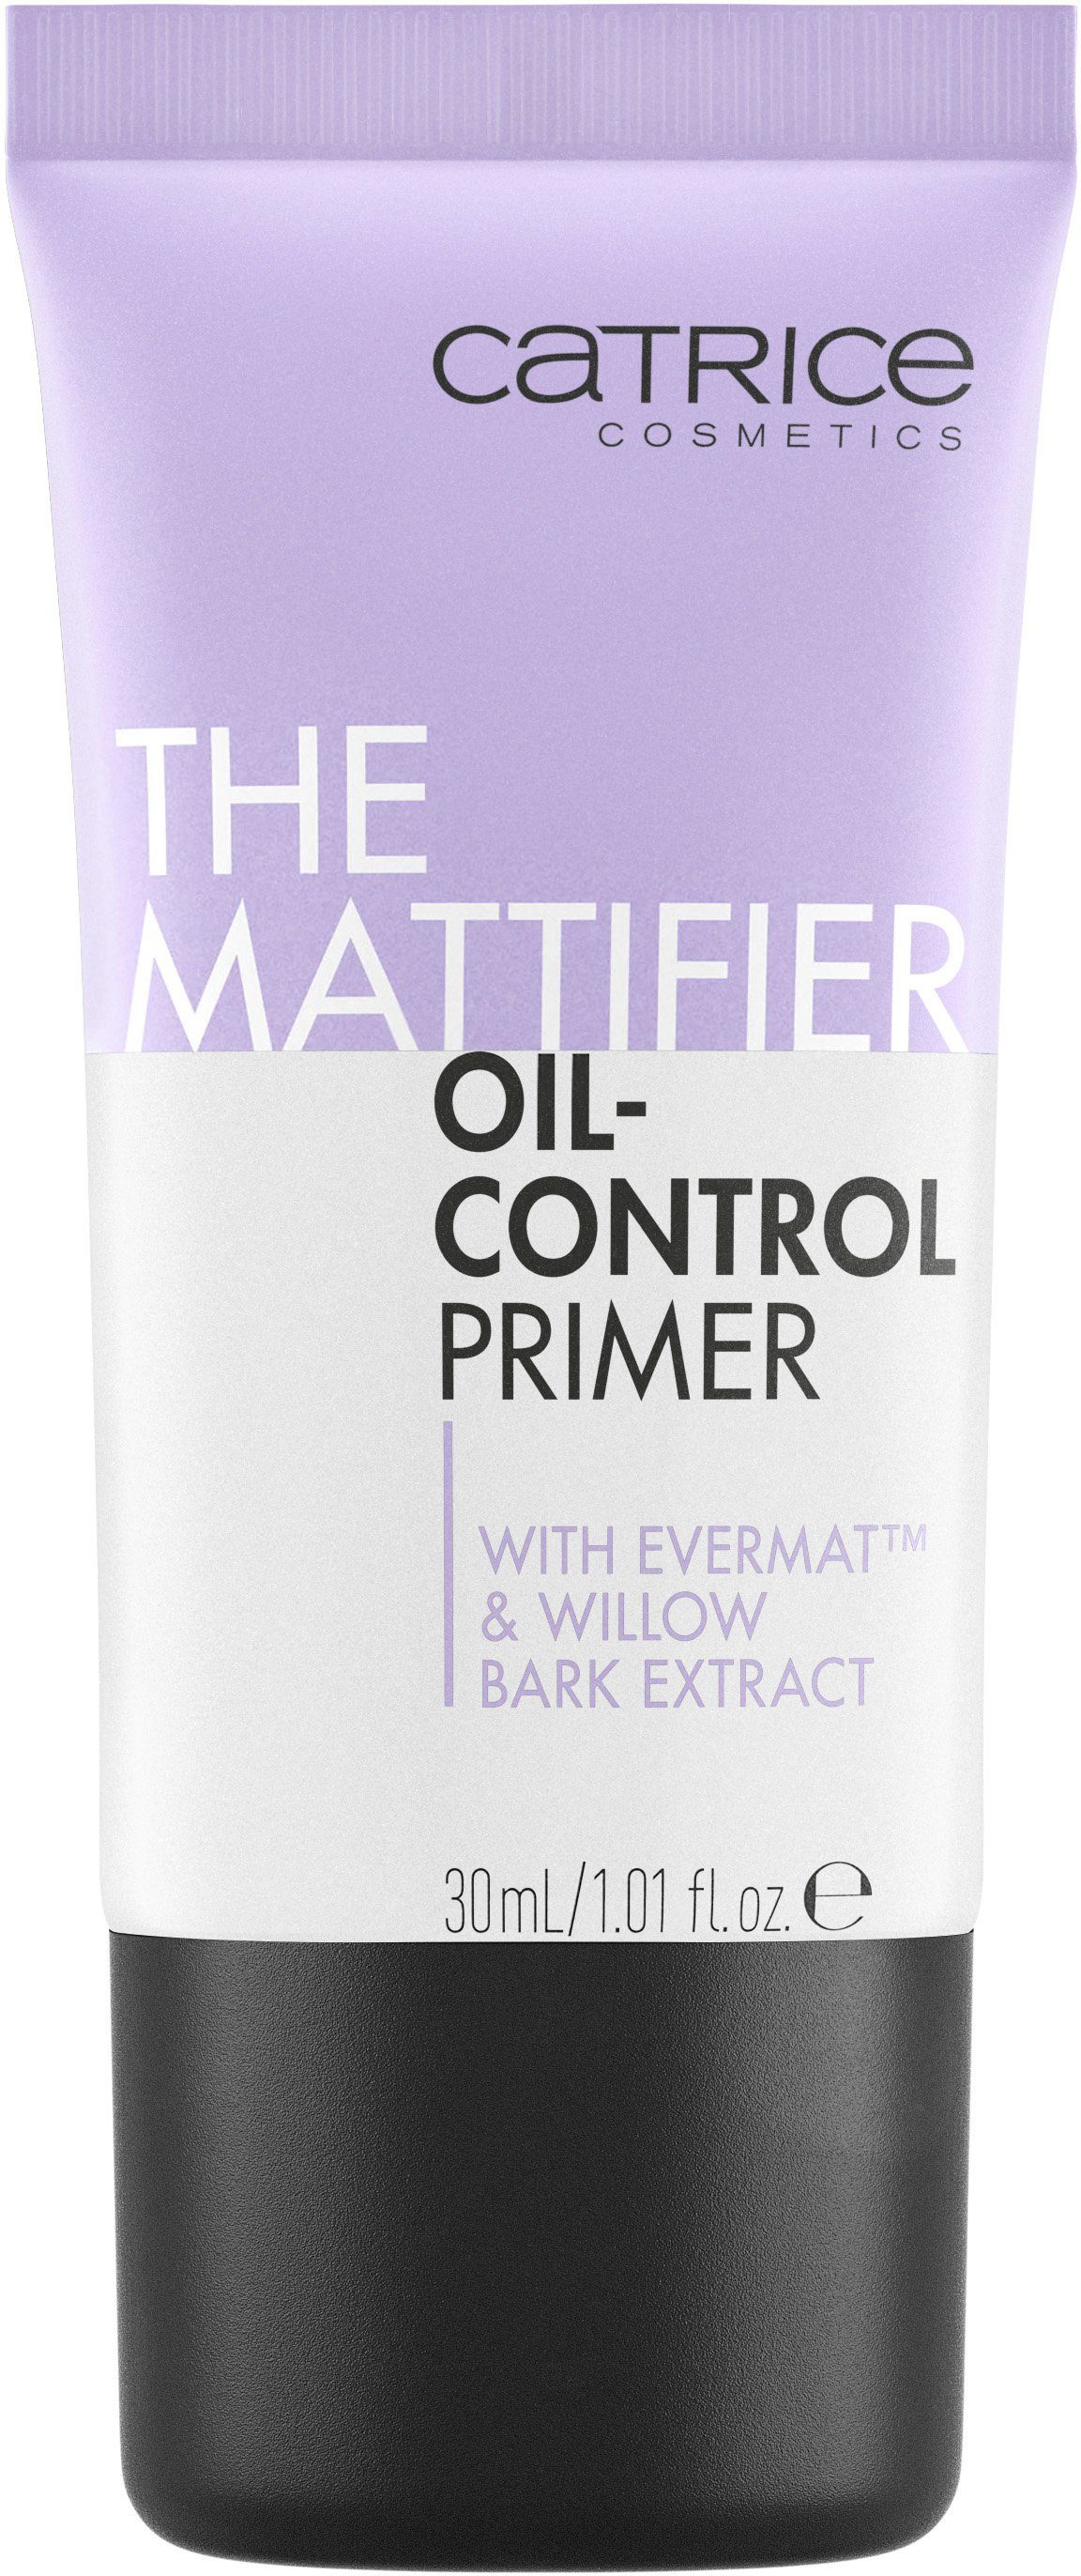 Mattifier Primer Primer, 3-tlg. Oil-Control Catrice The